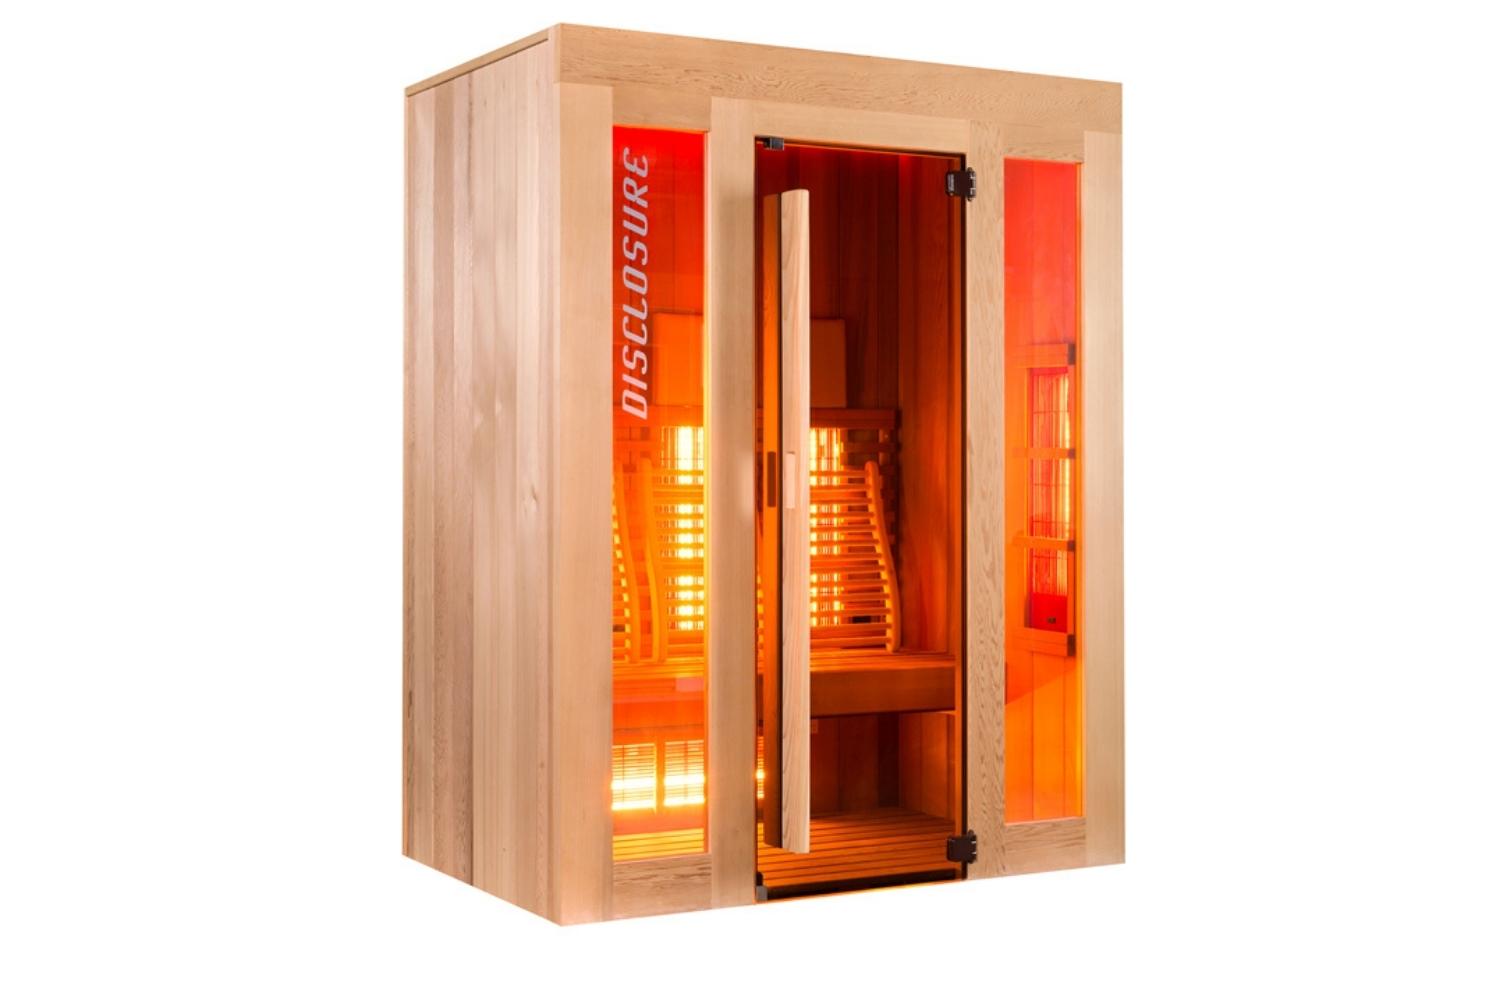 Infrarood sauna kopen 2022 - Infrarood sauna kopen infrarood sauna kopen prijs